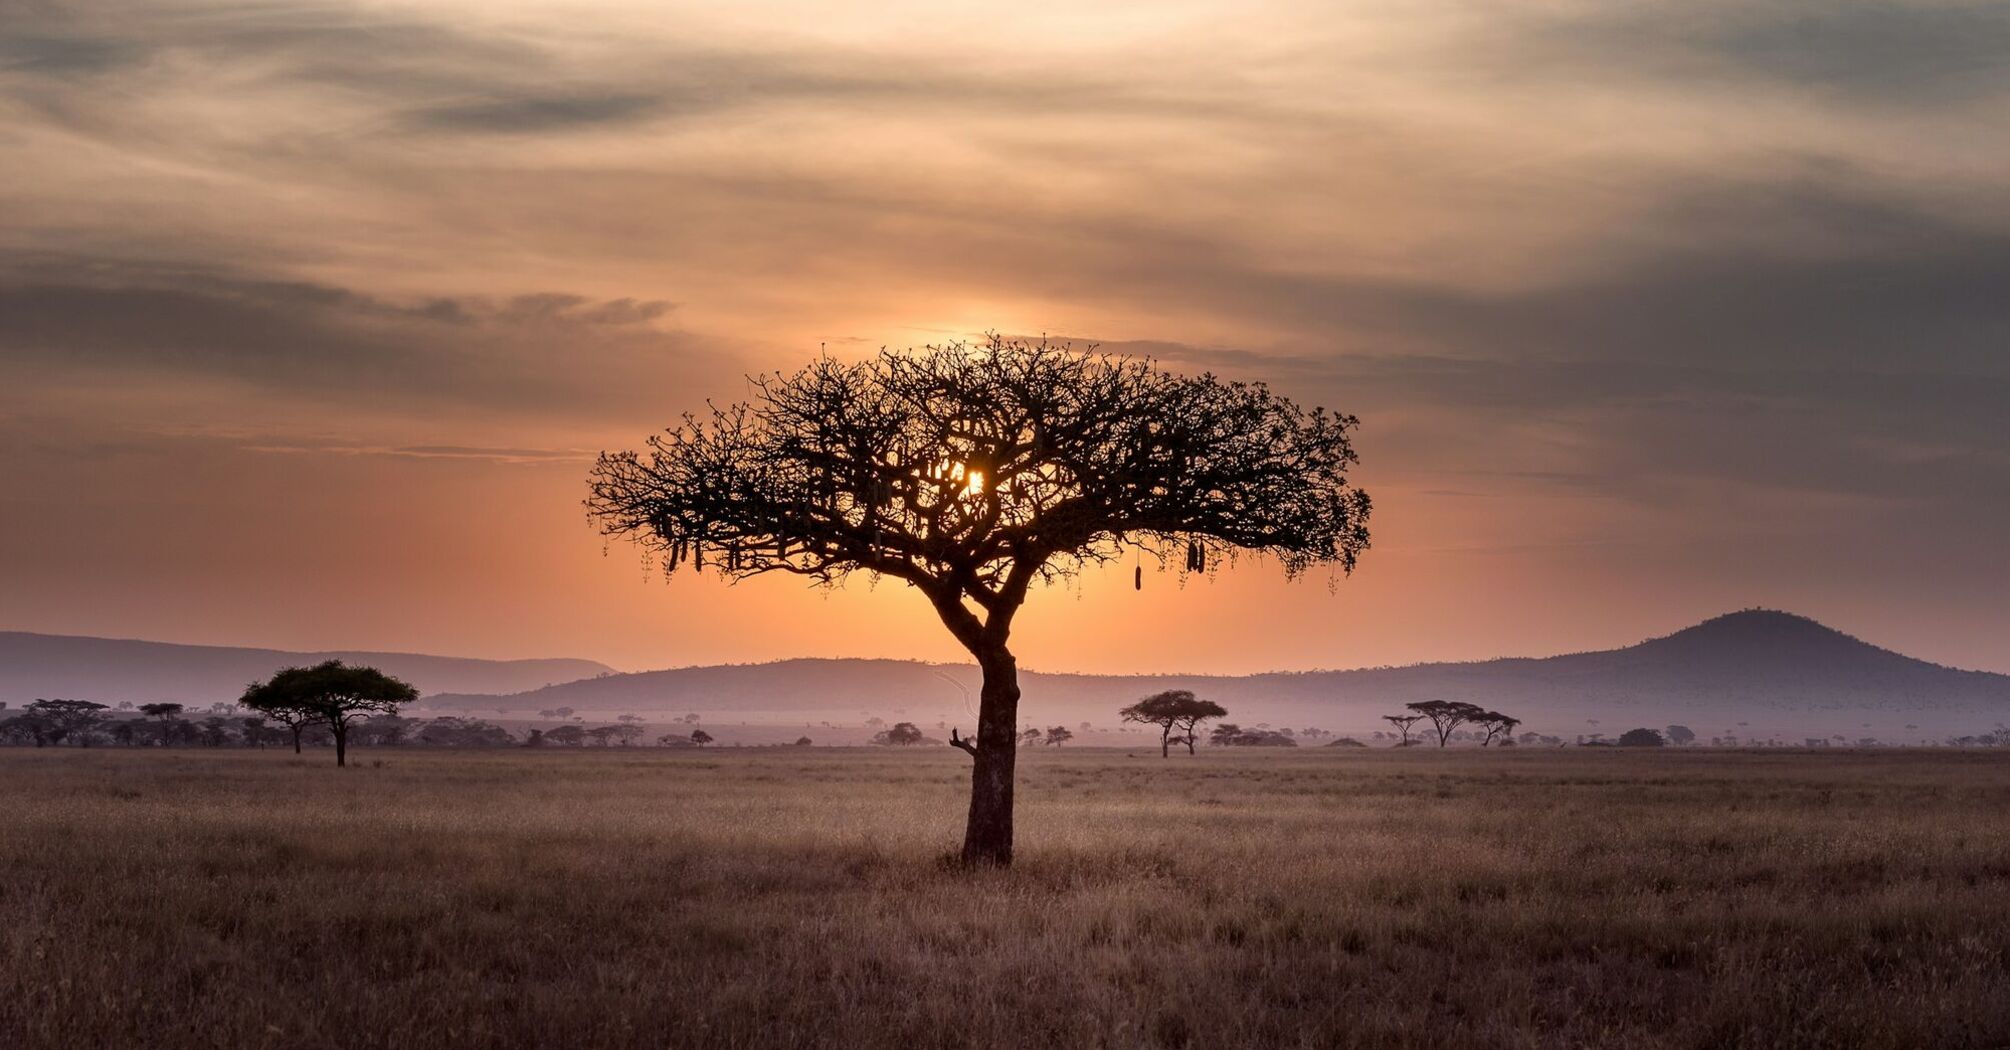 Sunset over the Serengeti in Tanzania